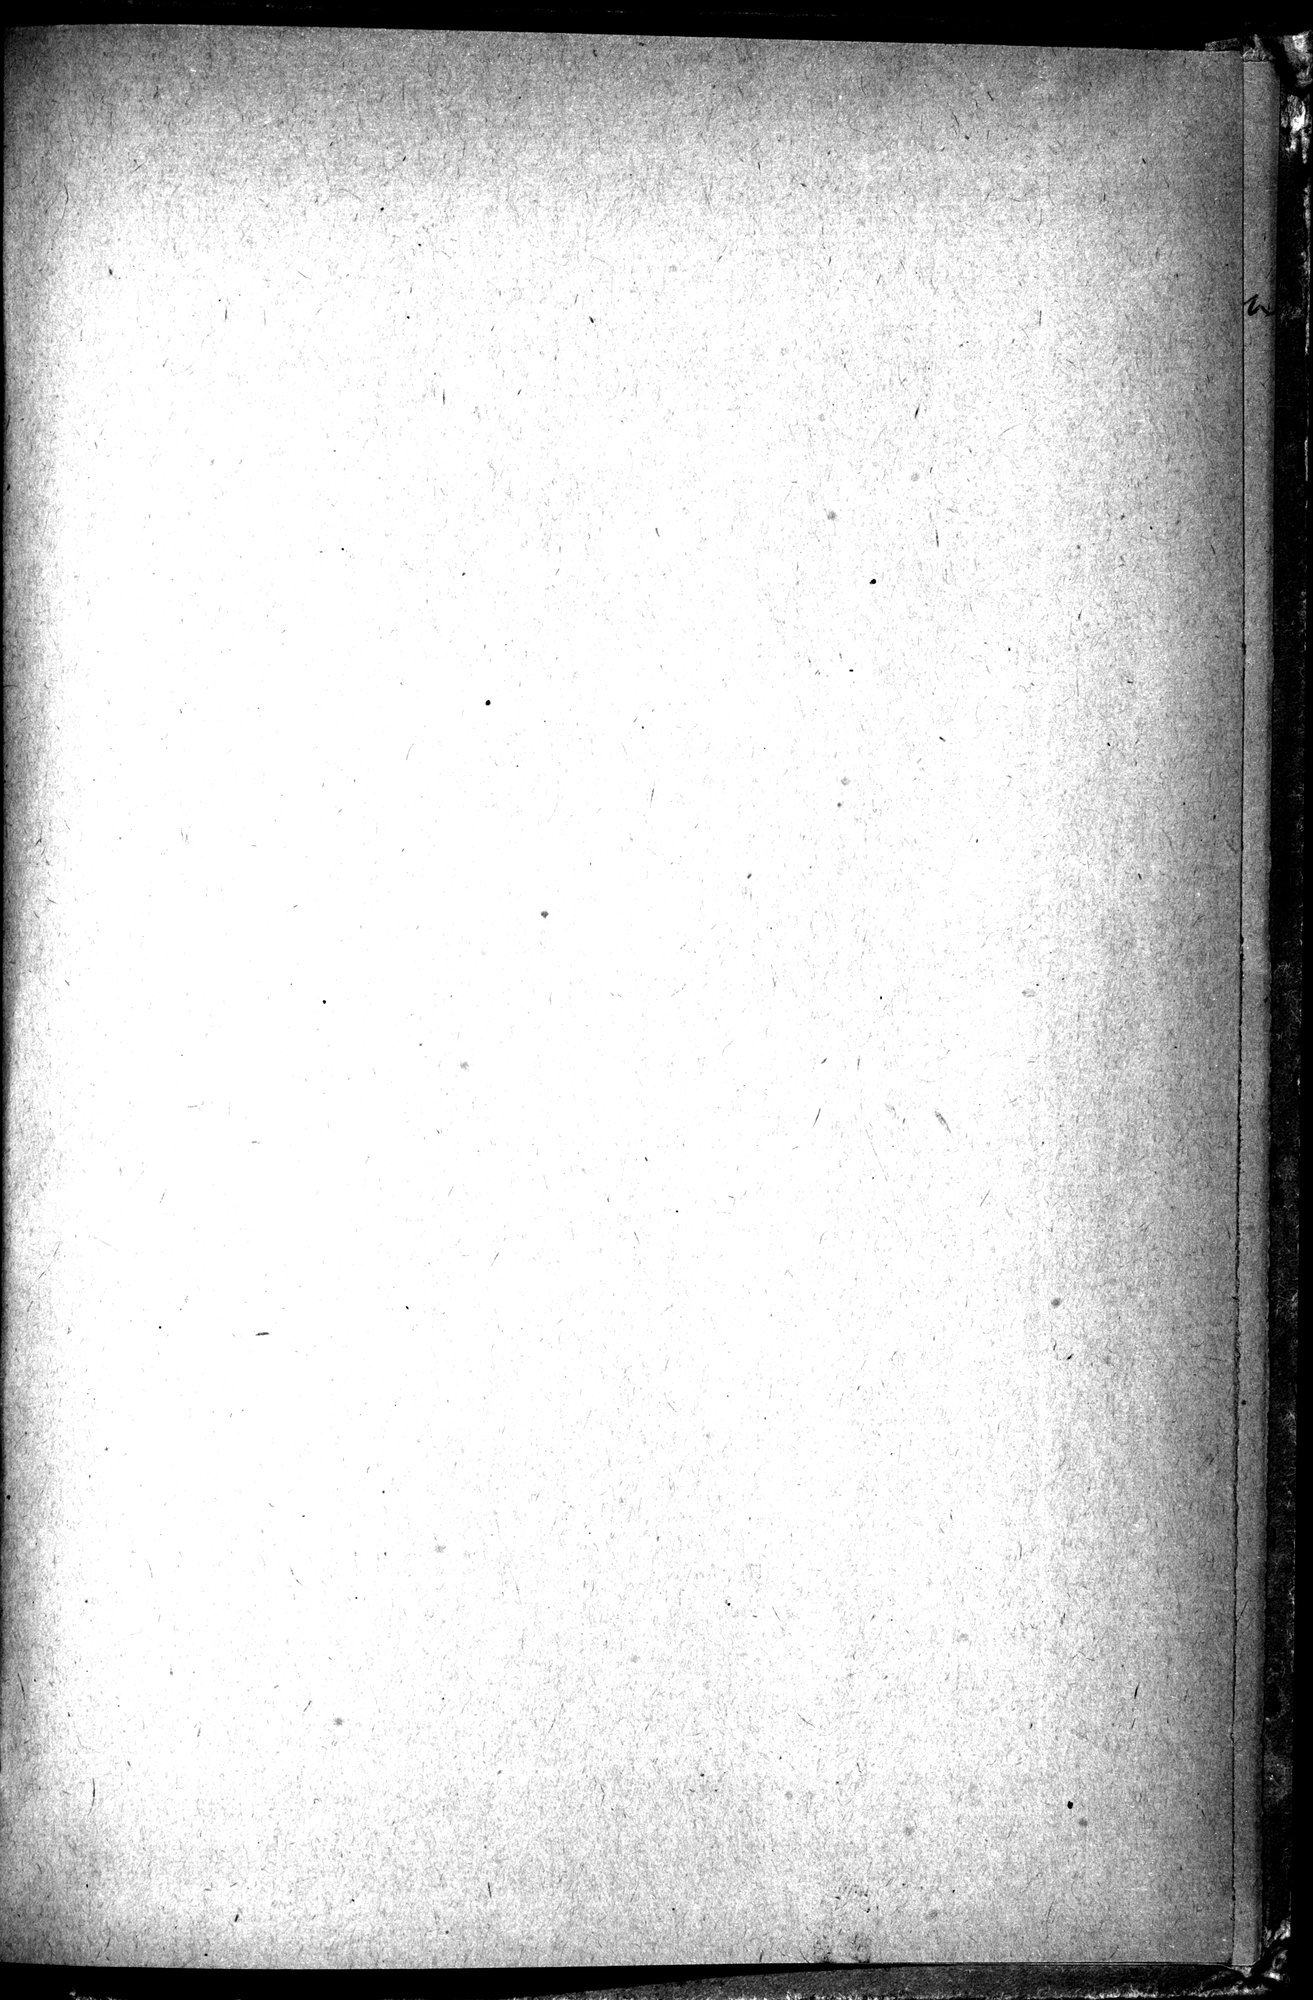 Puteshestvie v Tian' - Shan' v 1856-1857 godakh : vol.1 / 281 ページ（白黒高解像度画像）